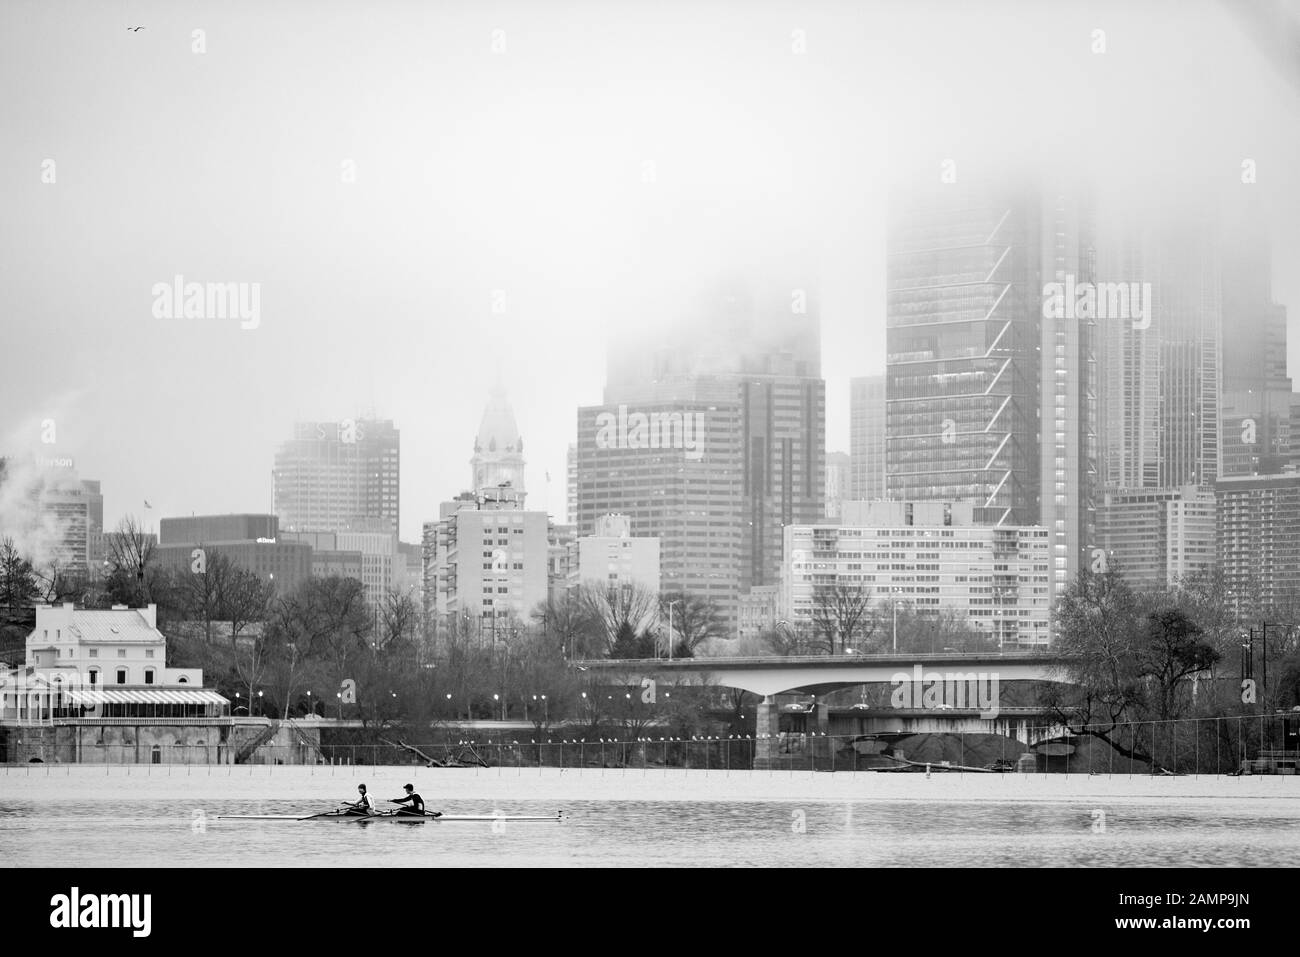 Ein Schwarz-Weiß-Bild von zwei Ruderern in einer Möwe vor einem nebelbedeckten Stadtbild. Stockfoto